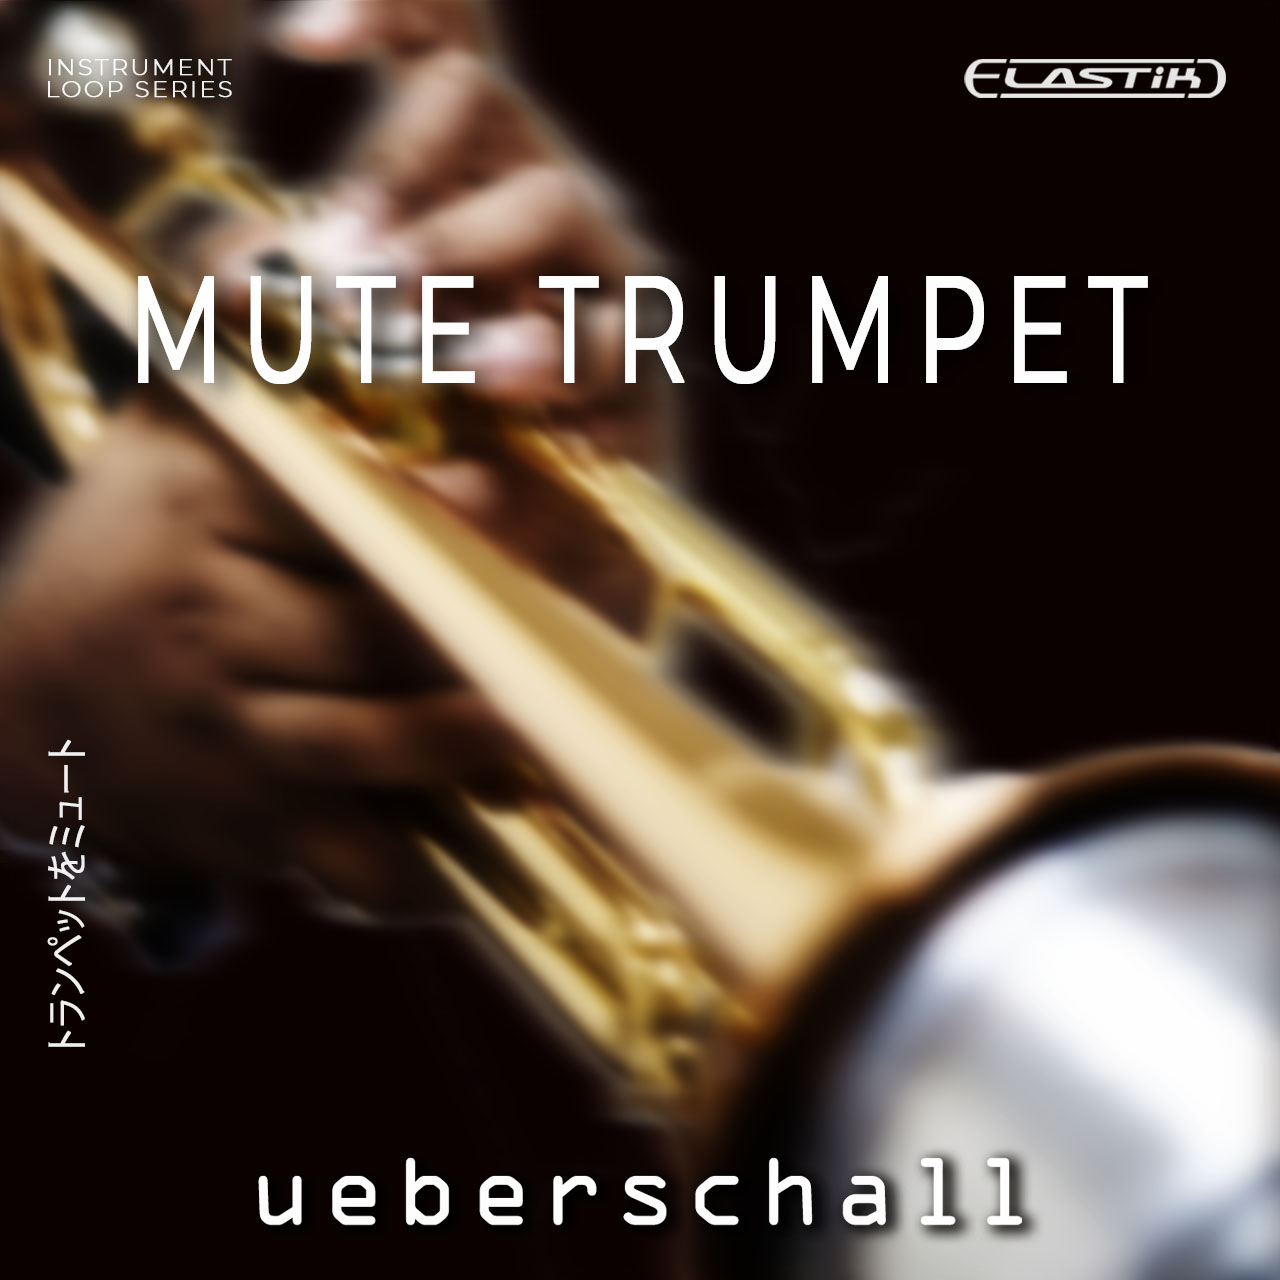 Intimate Mute Trumpet Emotive DowntempoTimeless Sound Soulful And Jazzy Mute Trumpet ueberschall 1280x1280 1